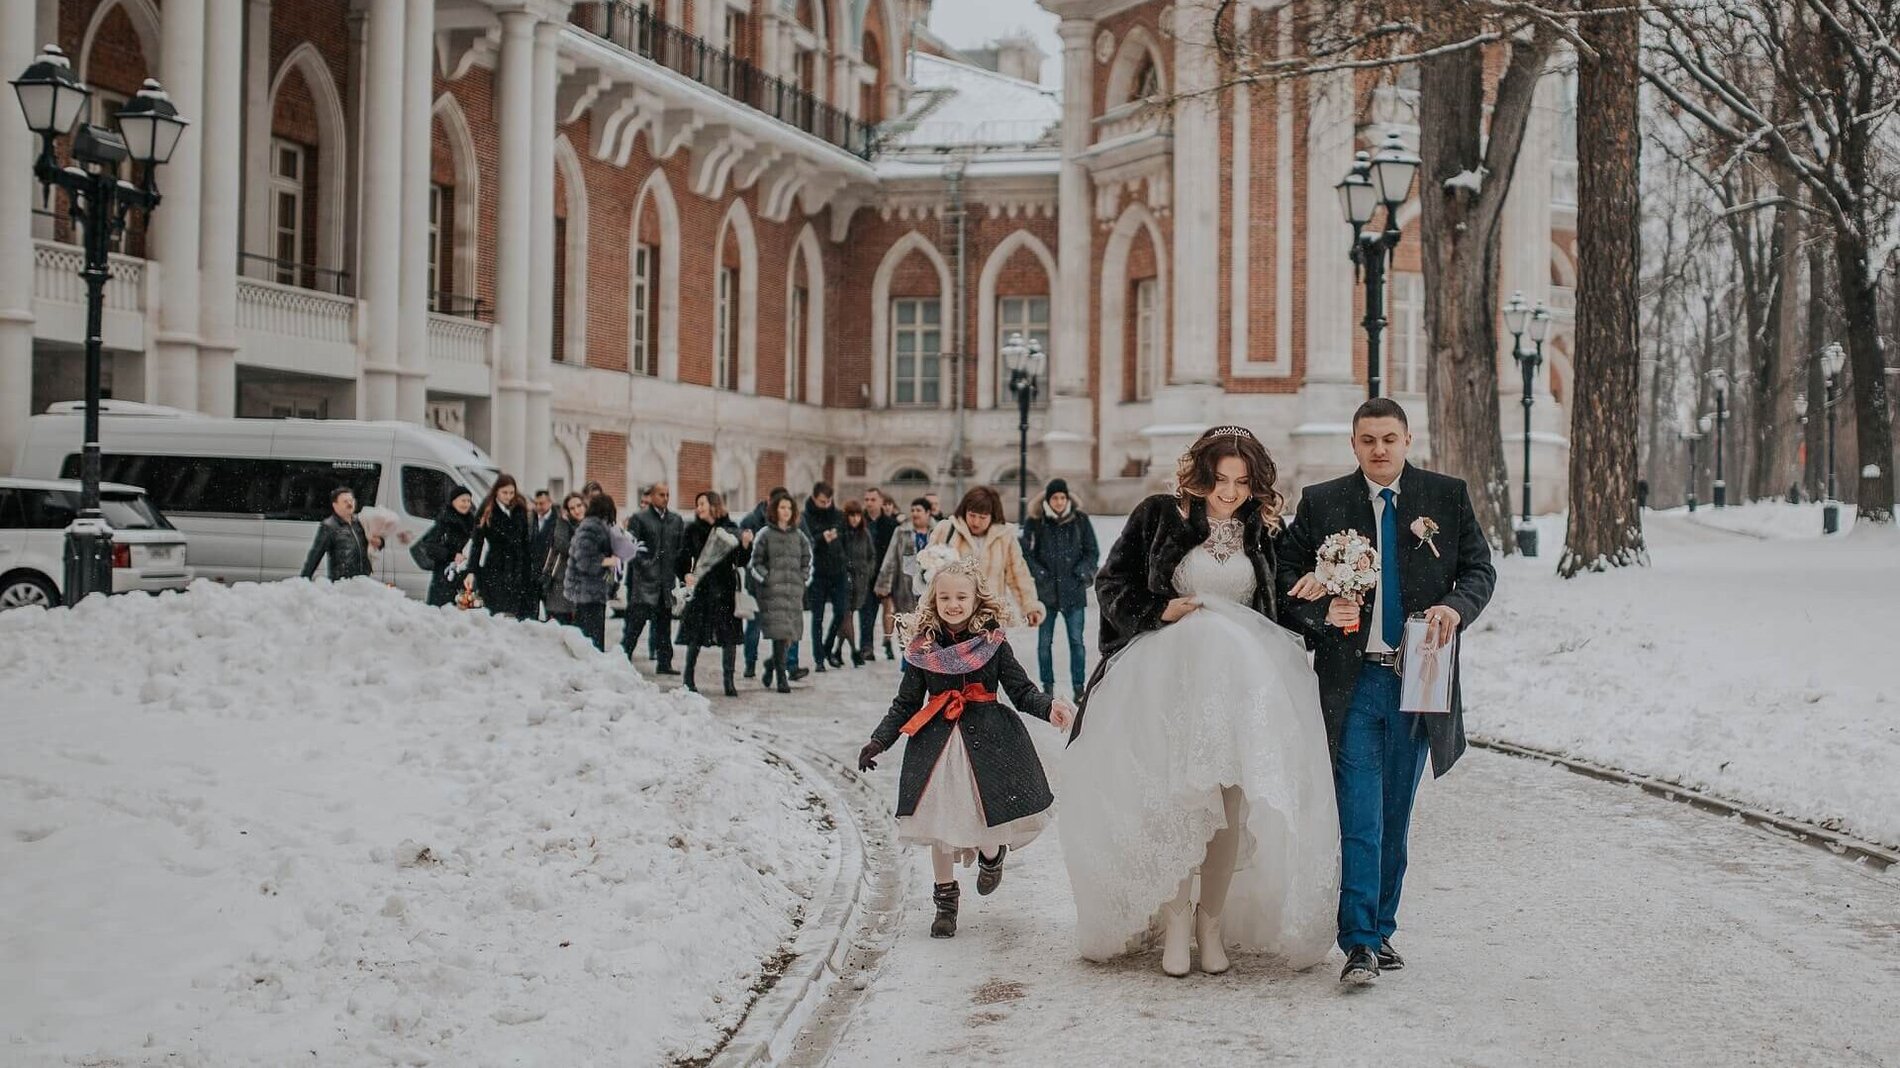 Brautpaar und Hochzeitsgesellschaft laufen im Schnee